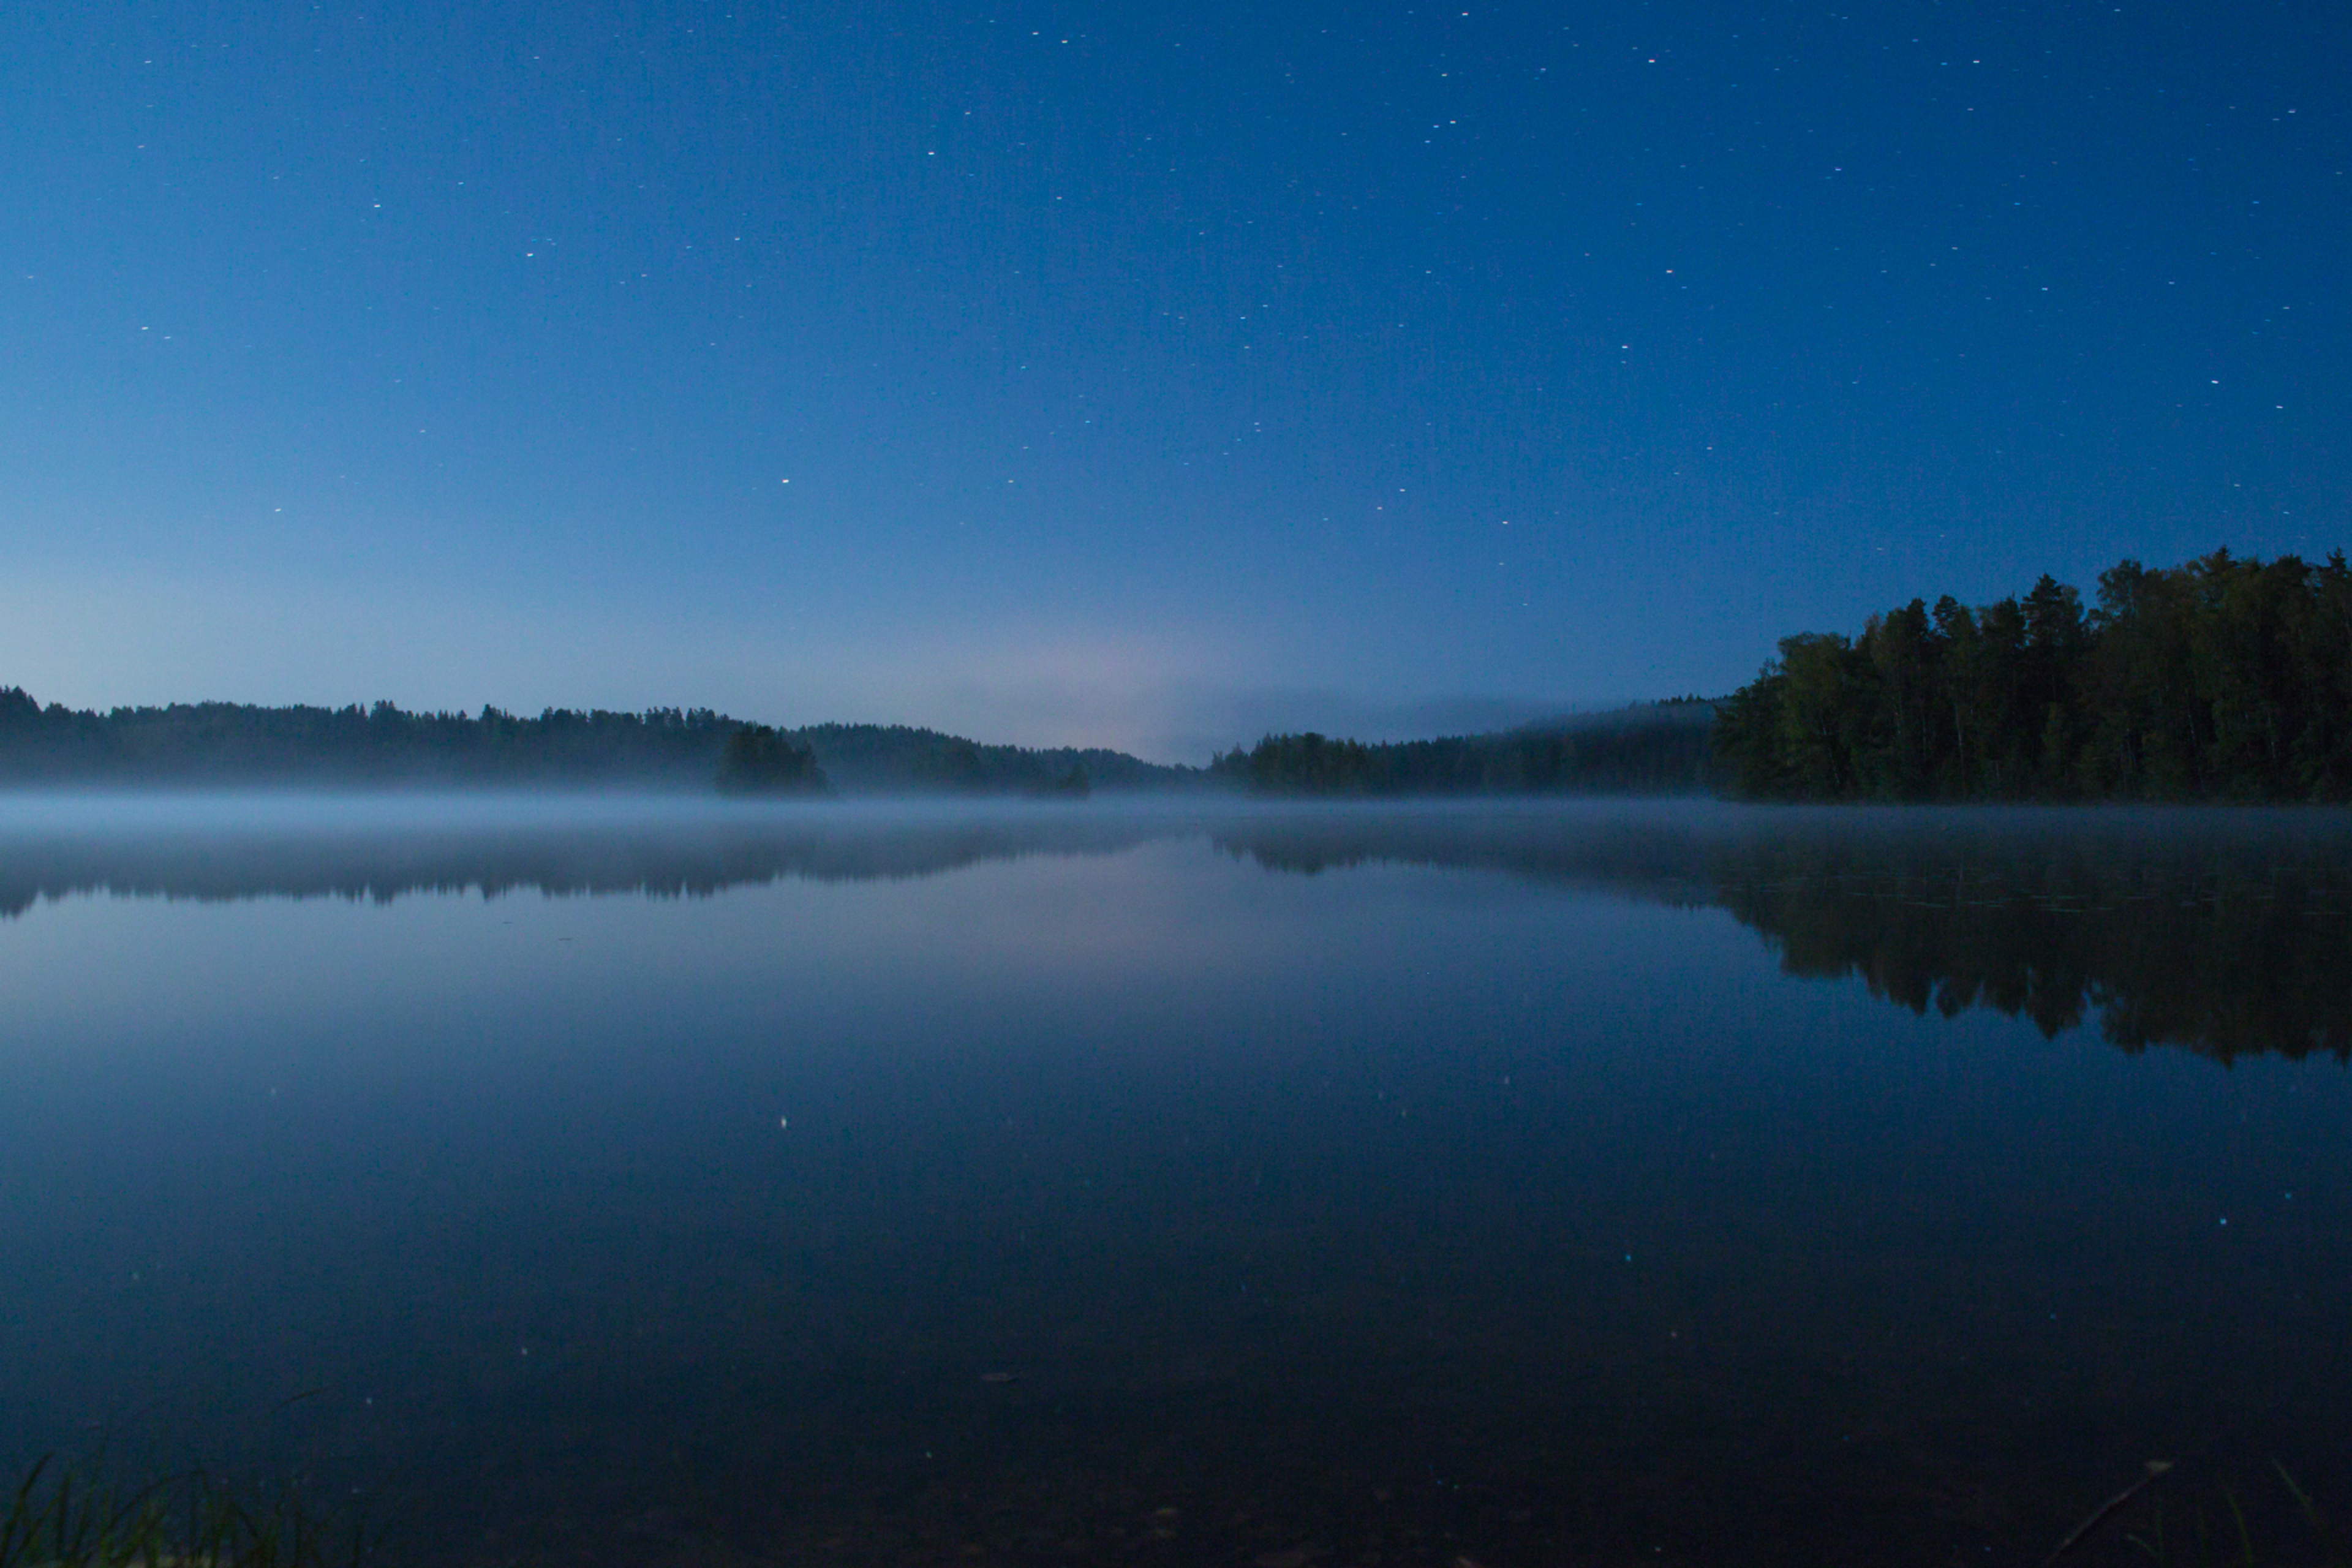 Night Lake - opprettet av Joel Hypen med photo